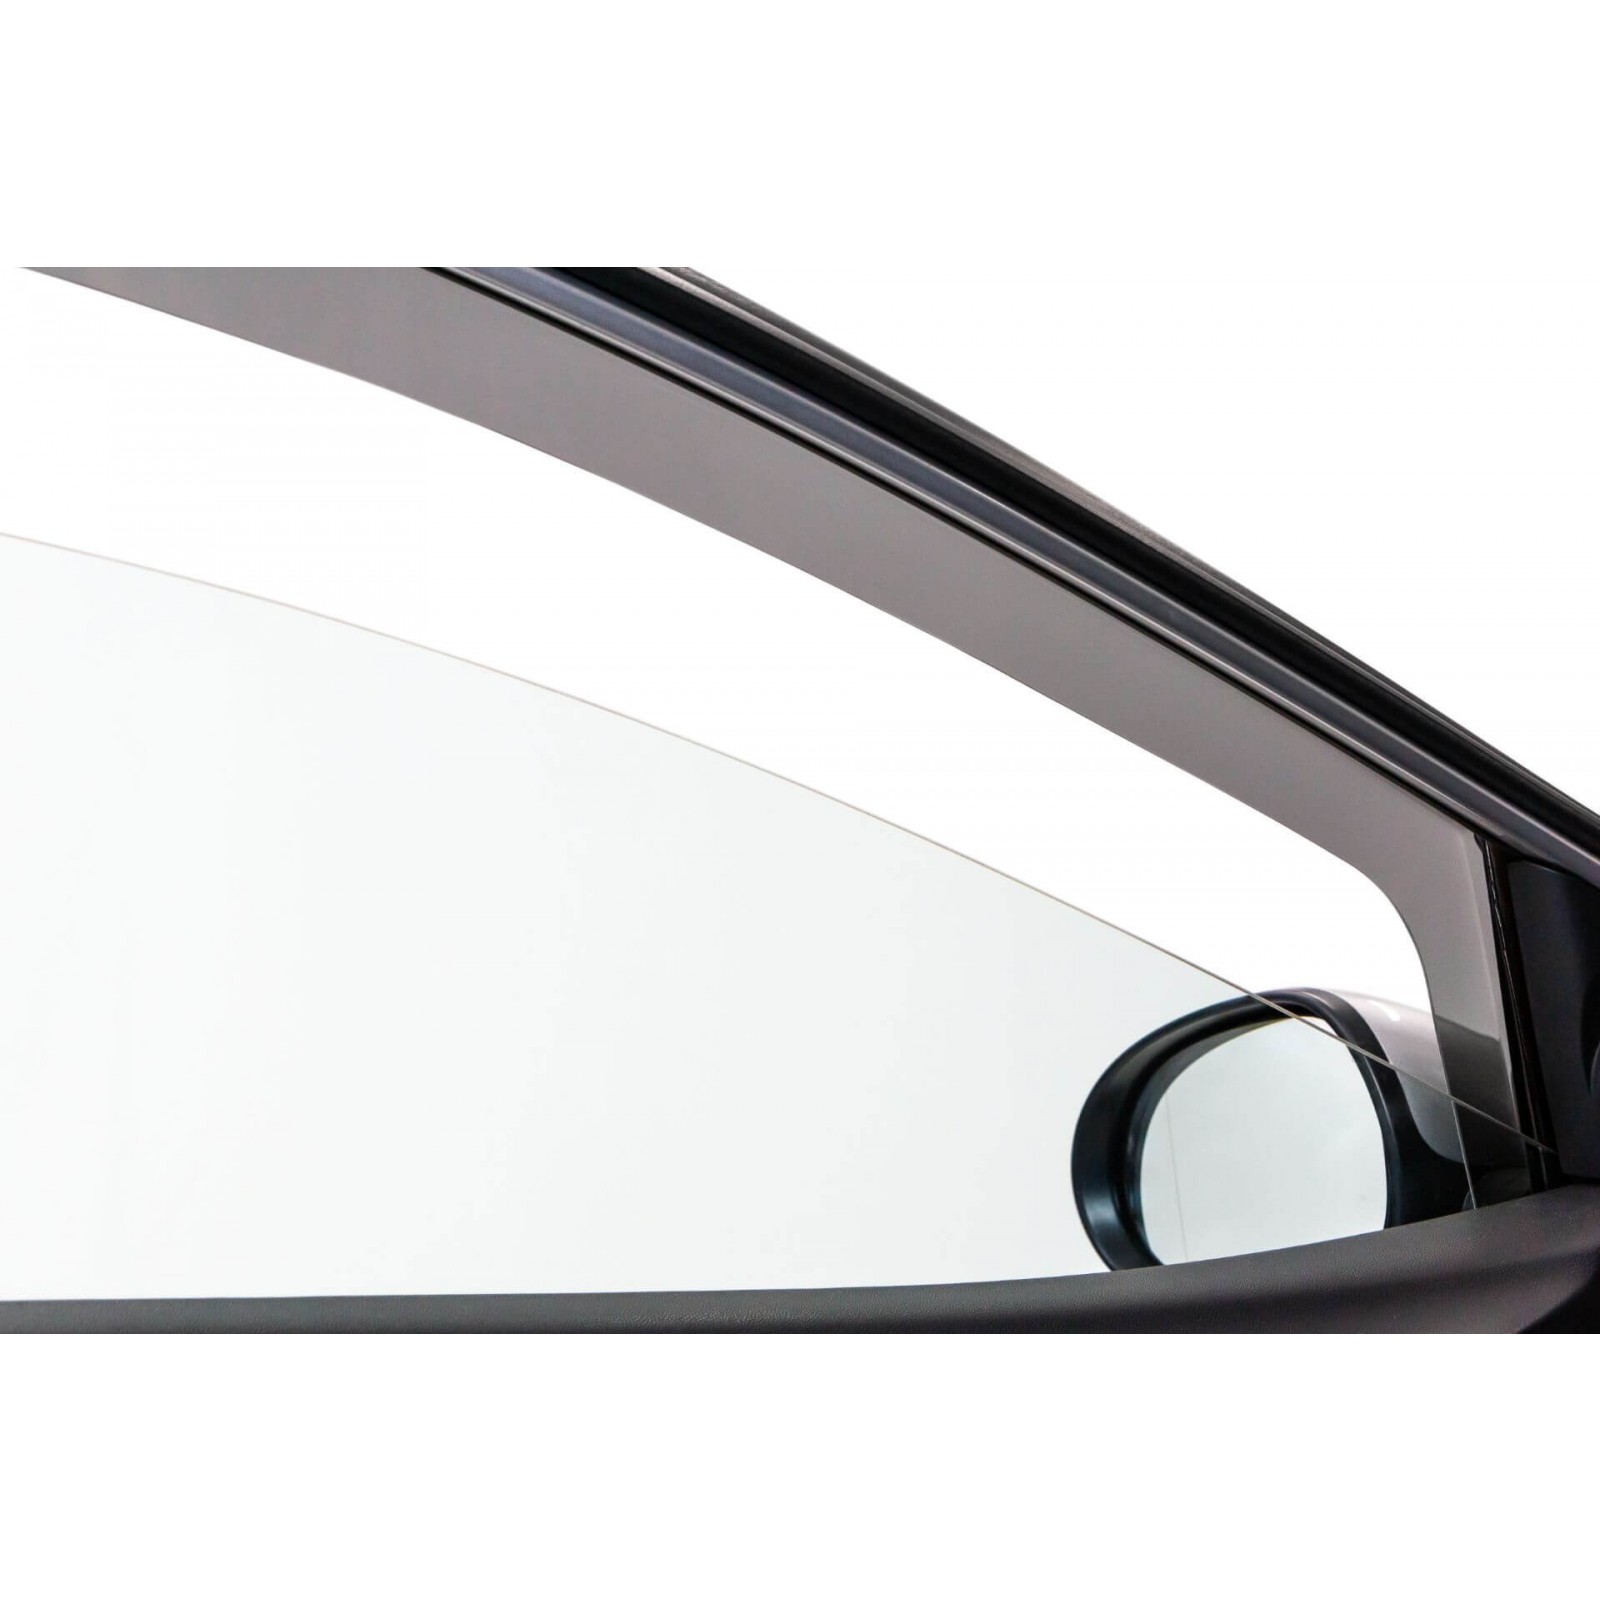  4 Pièces Deflecteur Vitre Voiture pour Hyundai I30 MK1-FD  2007-2012, Déflecteurs pour Auto, Déflecteurs d'air, Fenêtre Latérale  Visière Déflecteur Accessoire Voiture